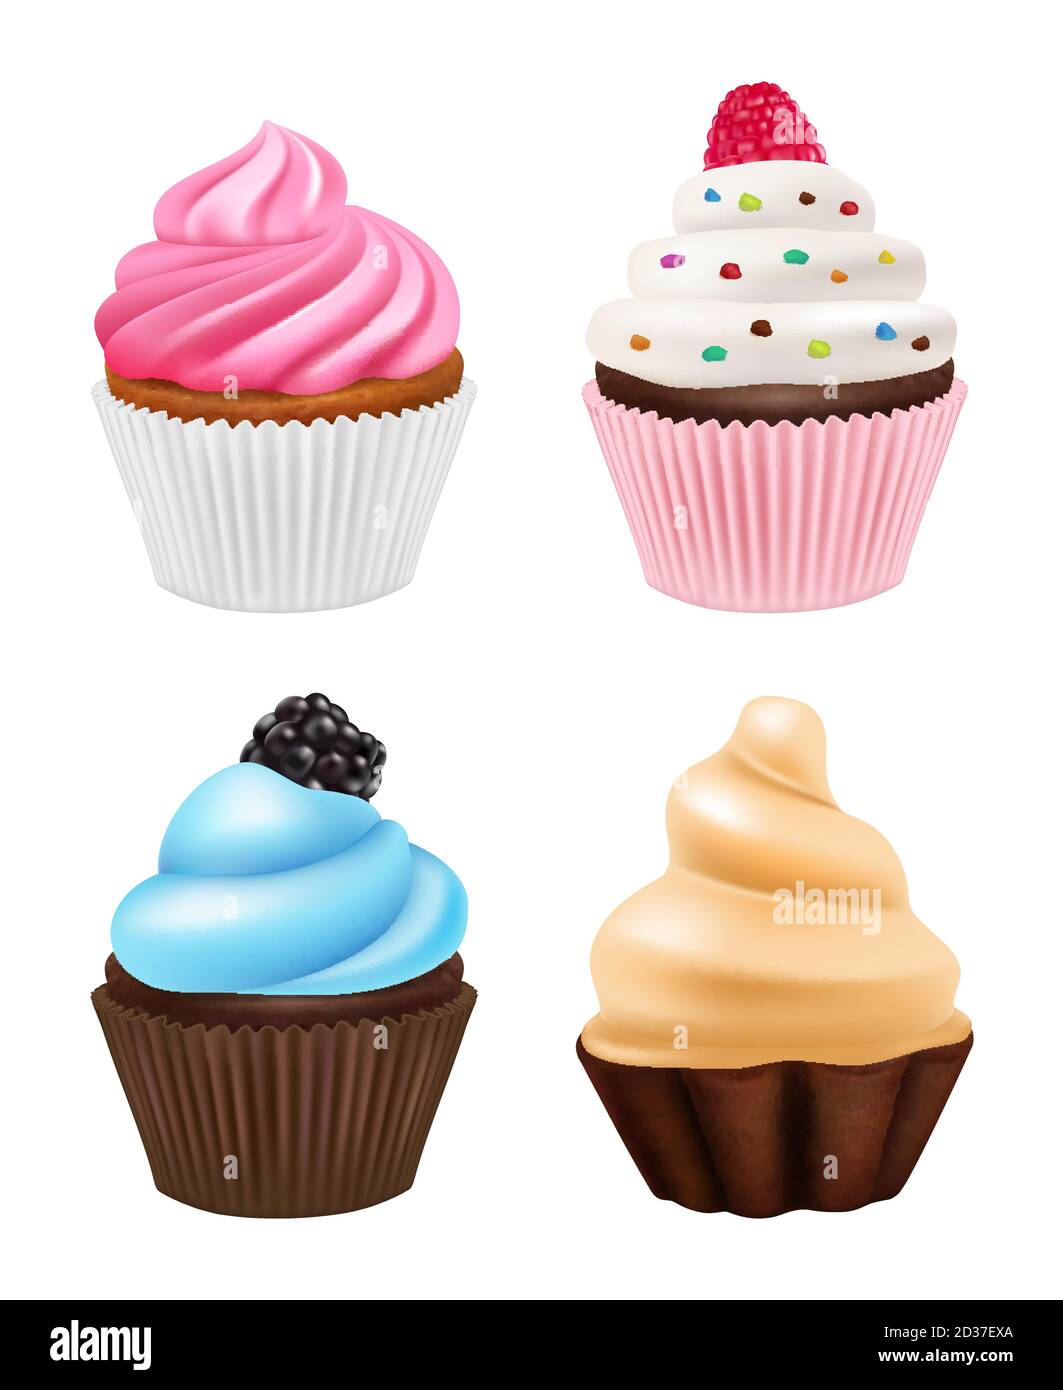 Cupcakes realistisch. Süßigkeiten Desserts Muffins Kuchen mit Schokolade und Sahne Vektor-Bilder von Cupcakes Stock Vektor